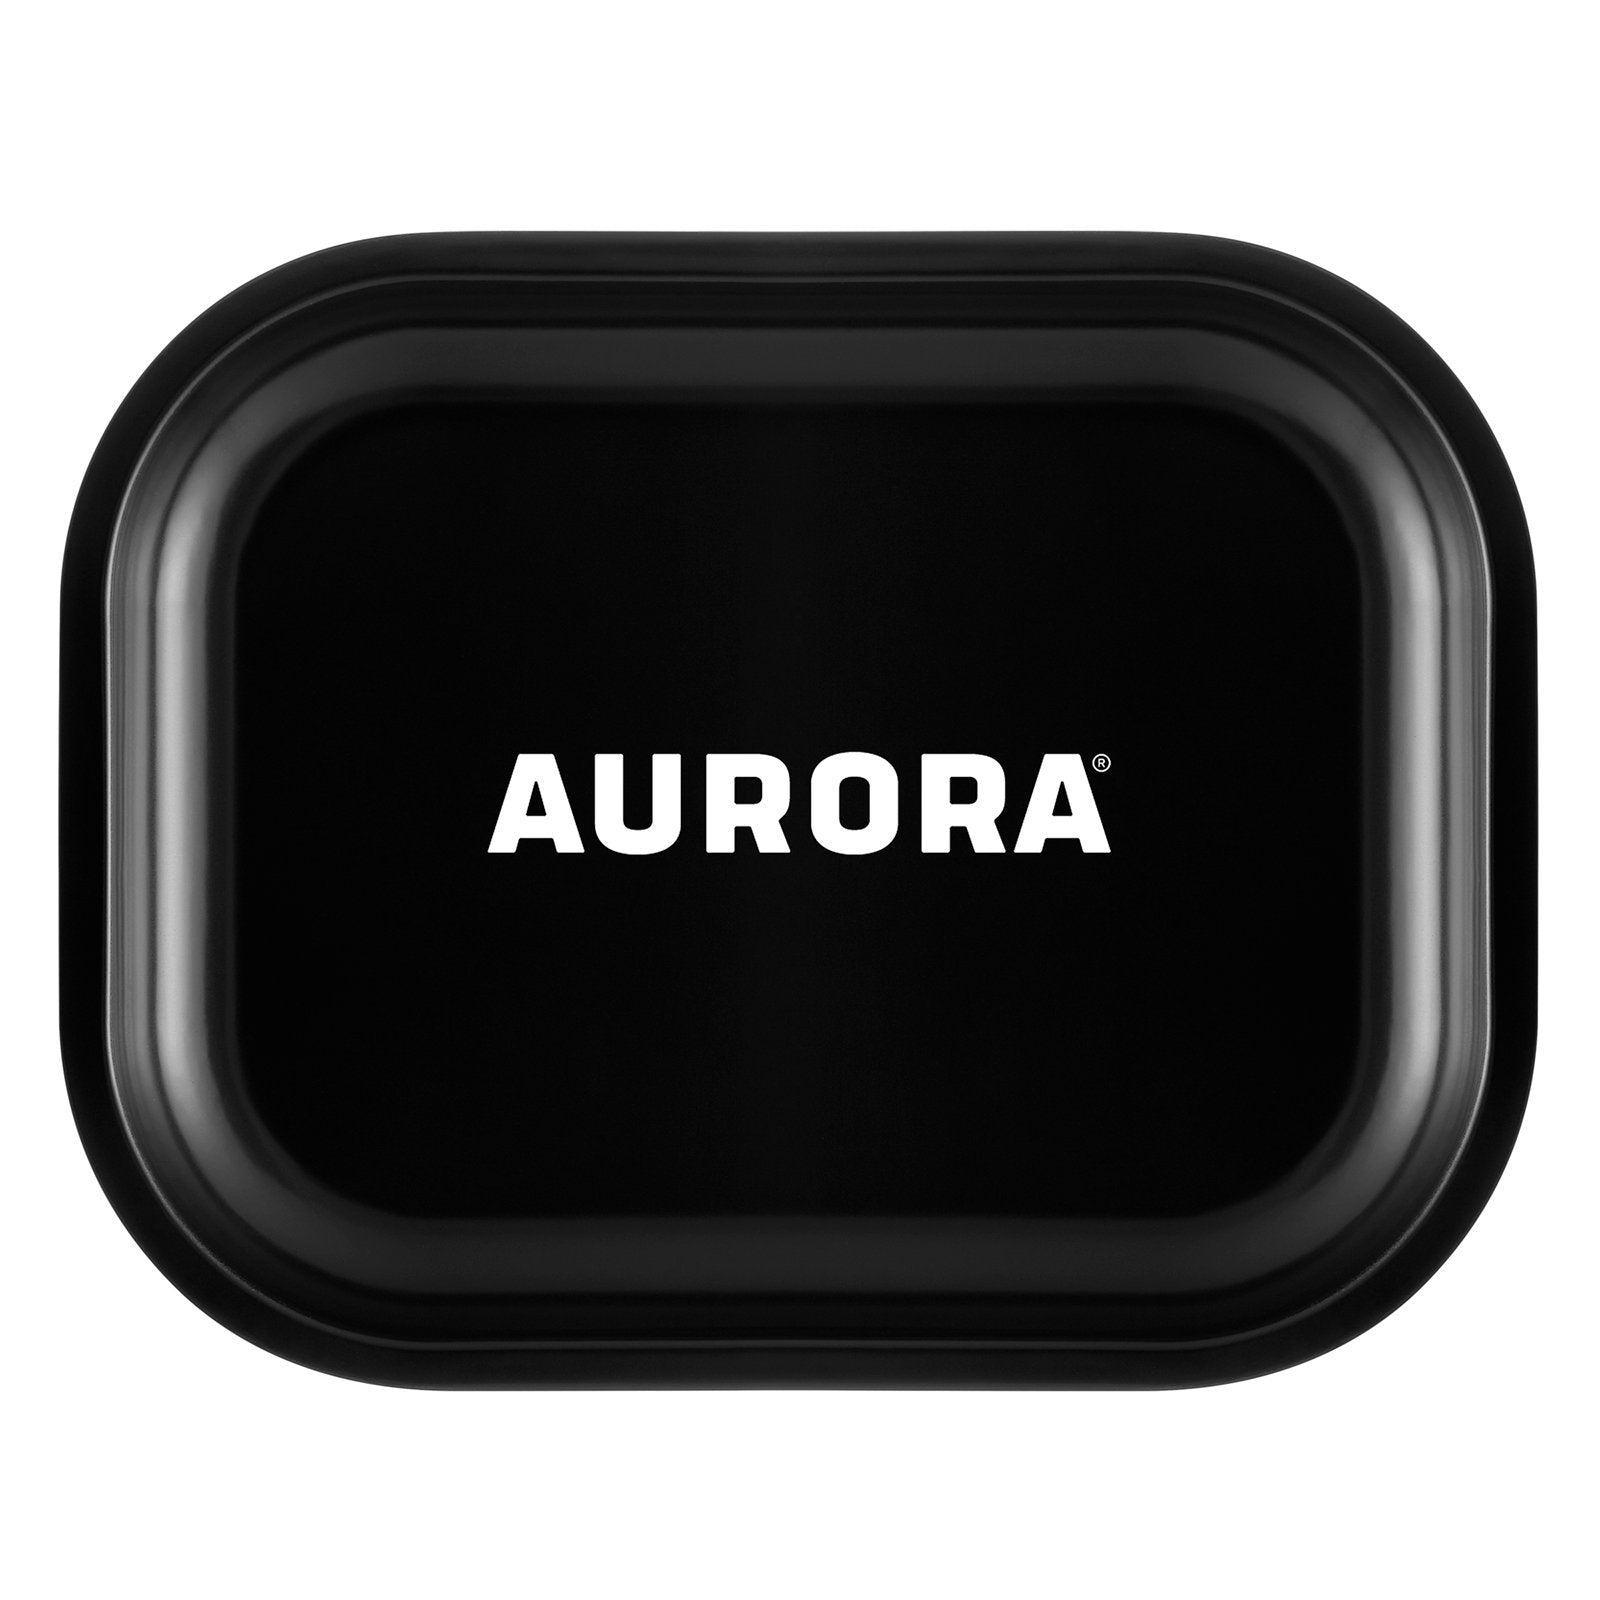 aurora metal rolling tray black large